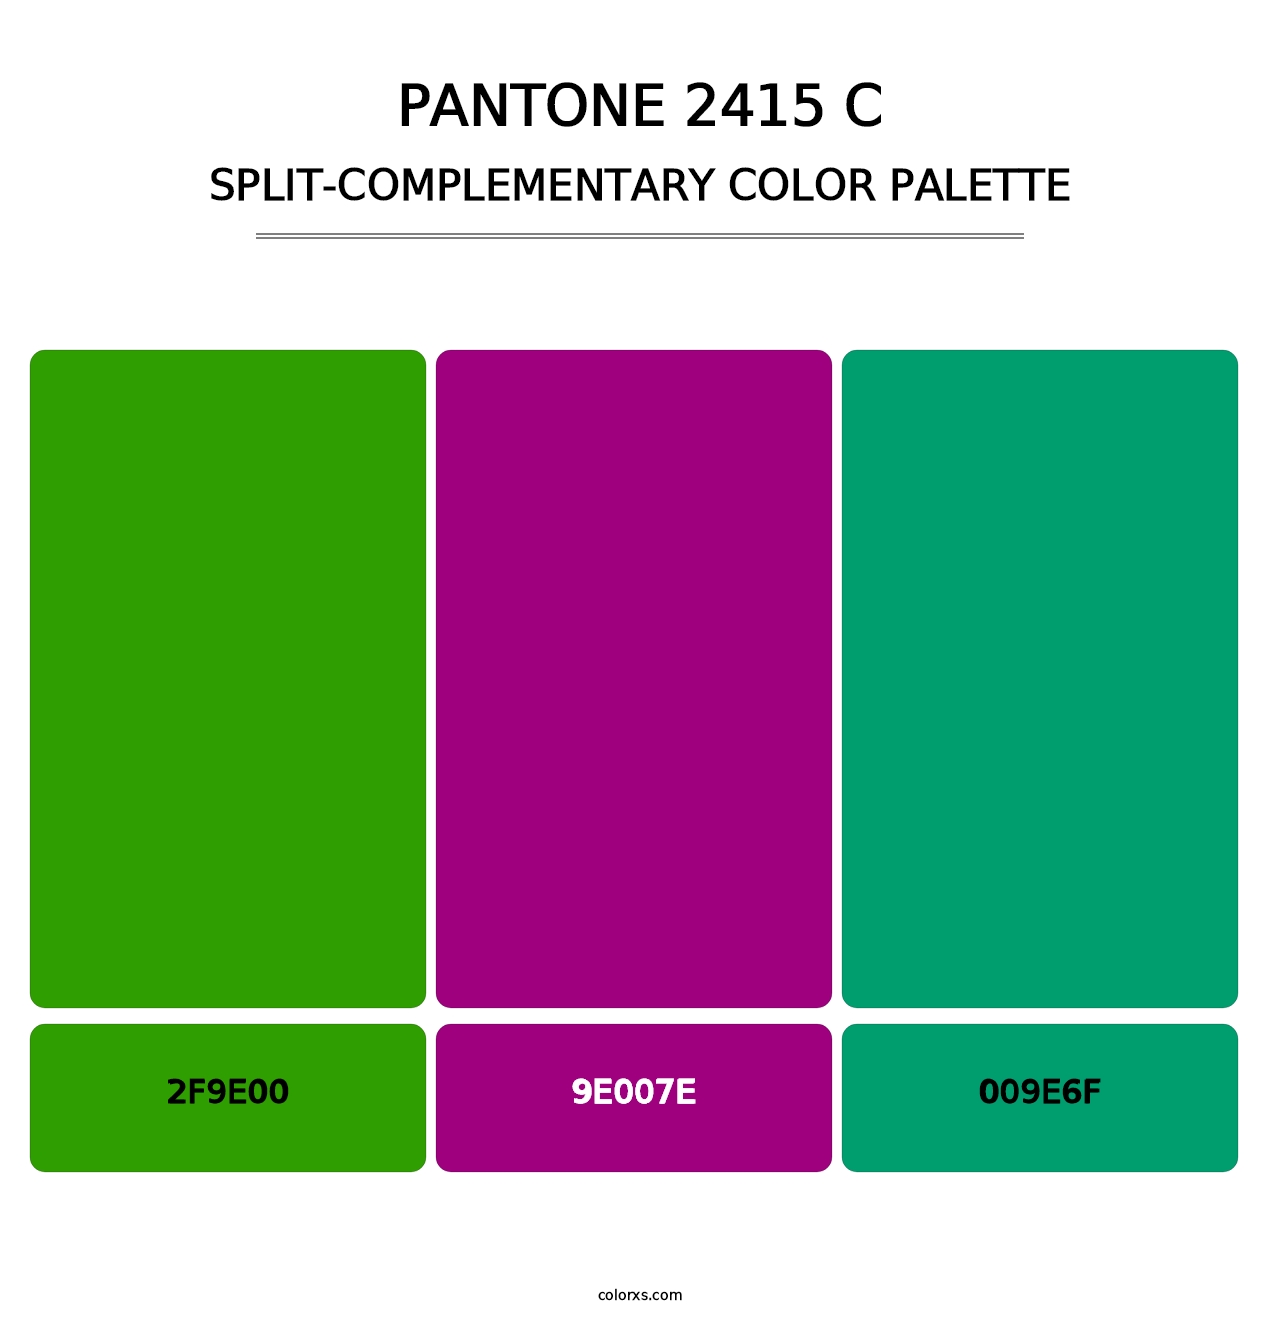 PANTONE 2415 C - Split-Complementary Color Palette